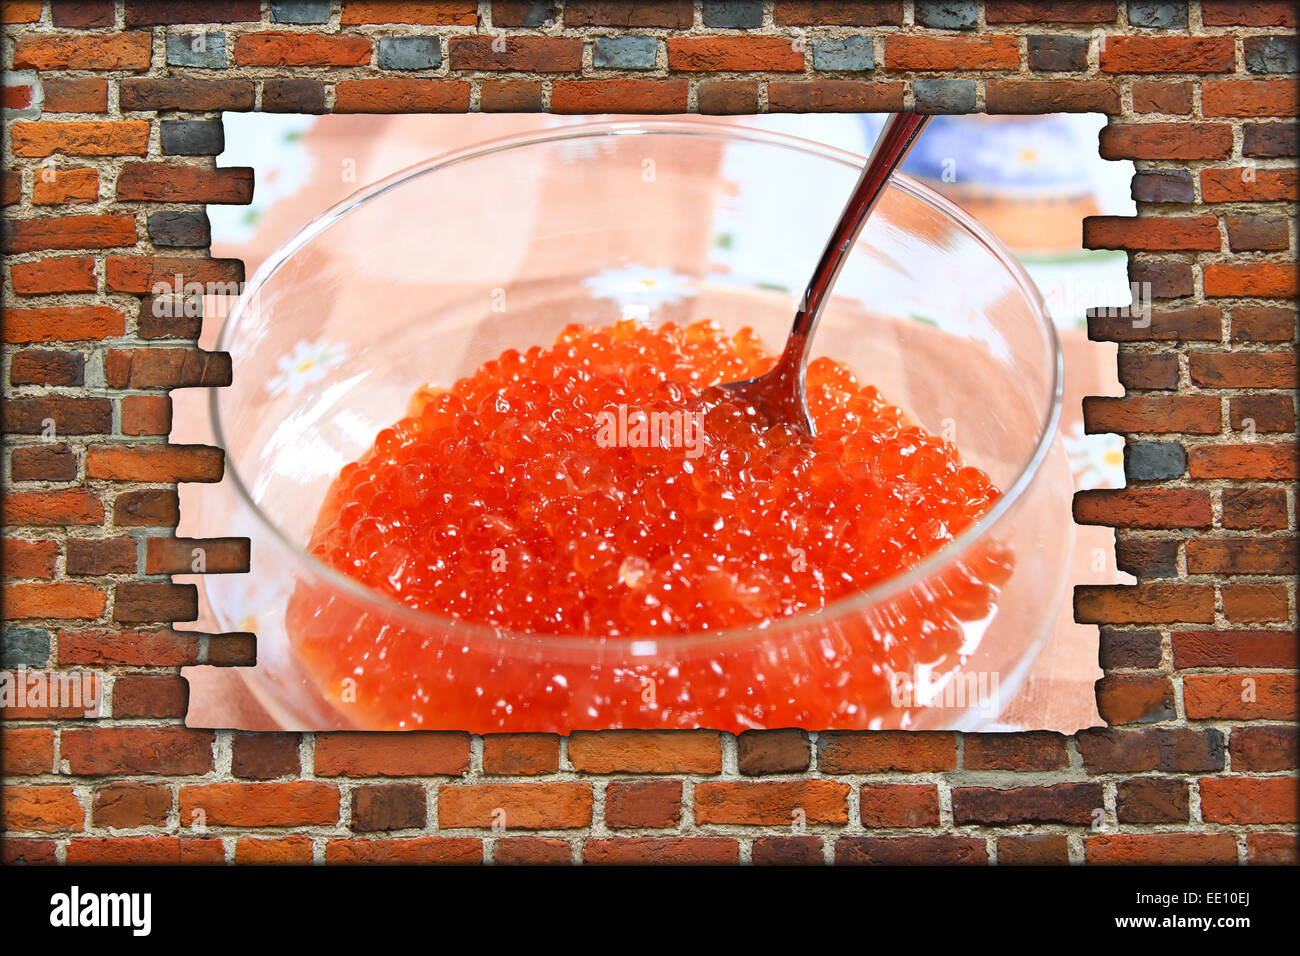 Trou dans la casse et brickwall vue de caviar rouge dans la plaque avec la cuillère Banque D'Images